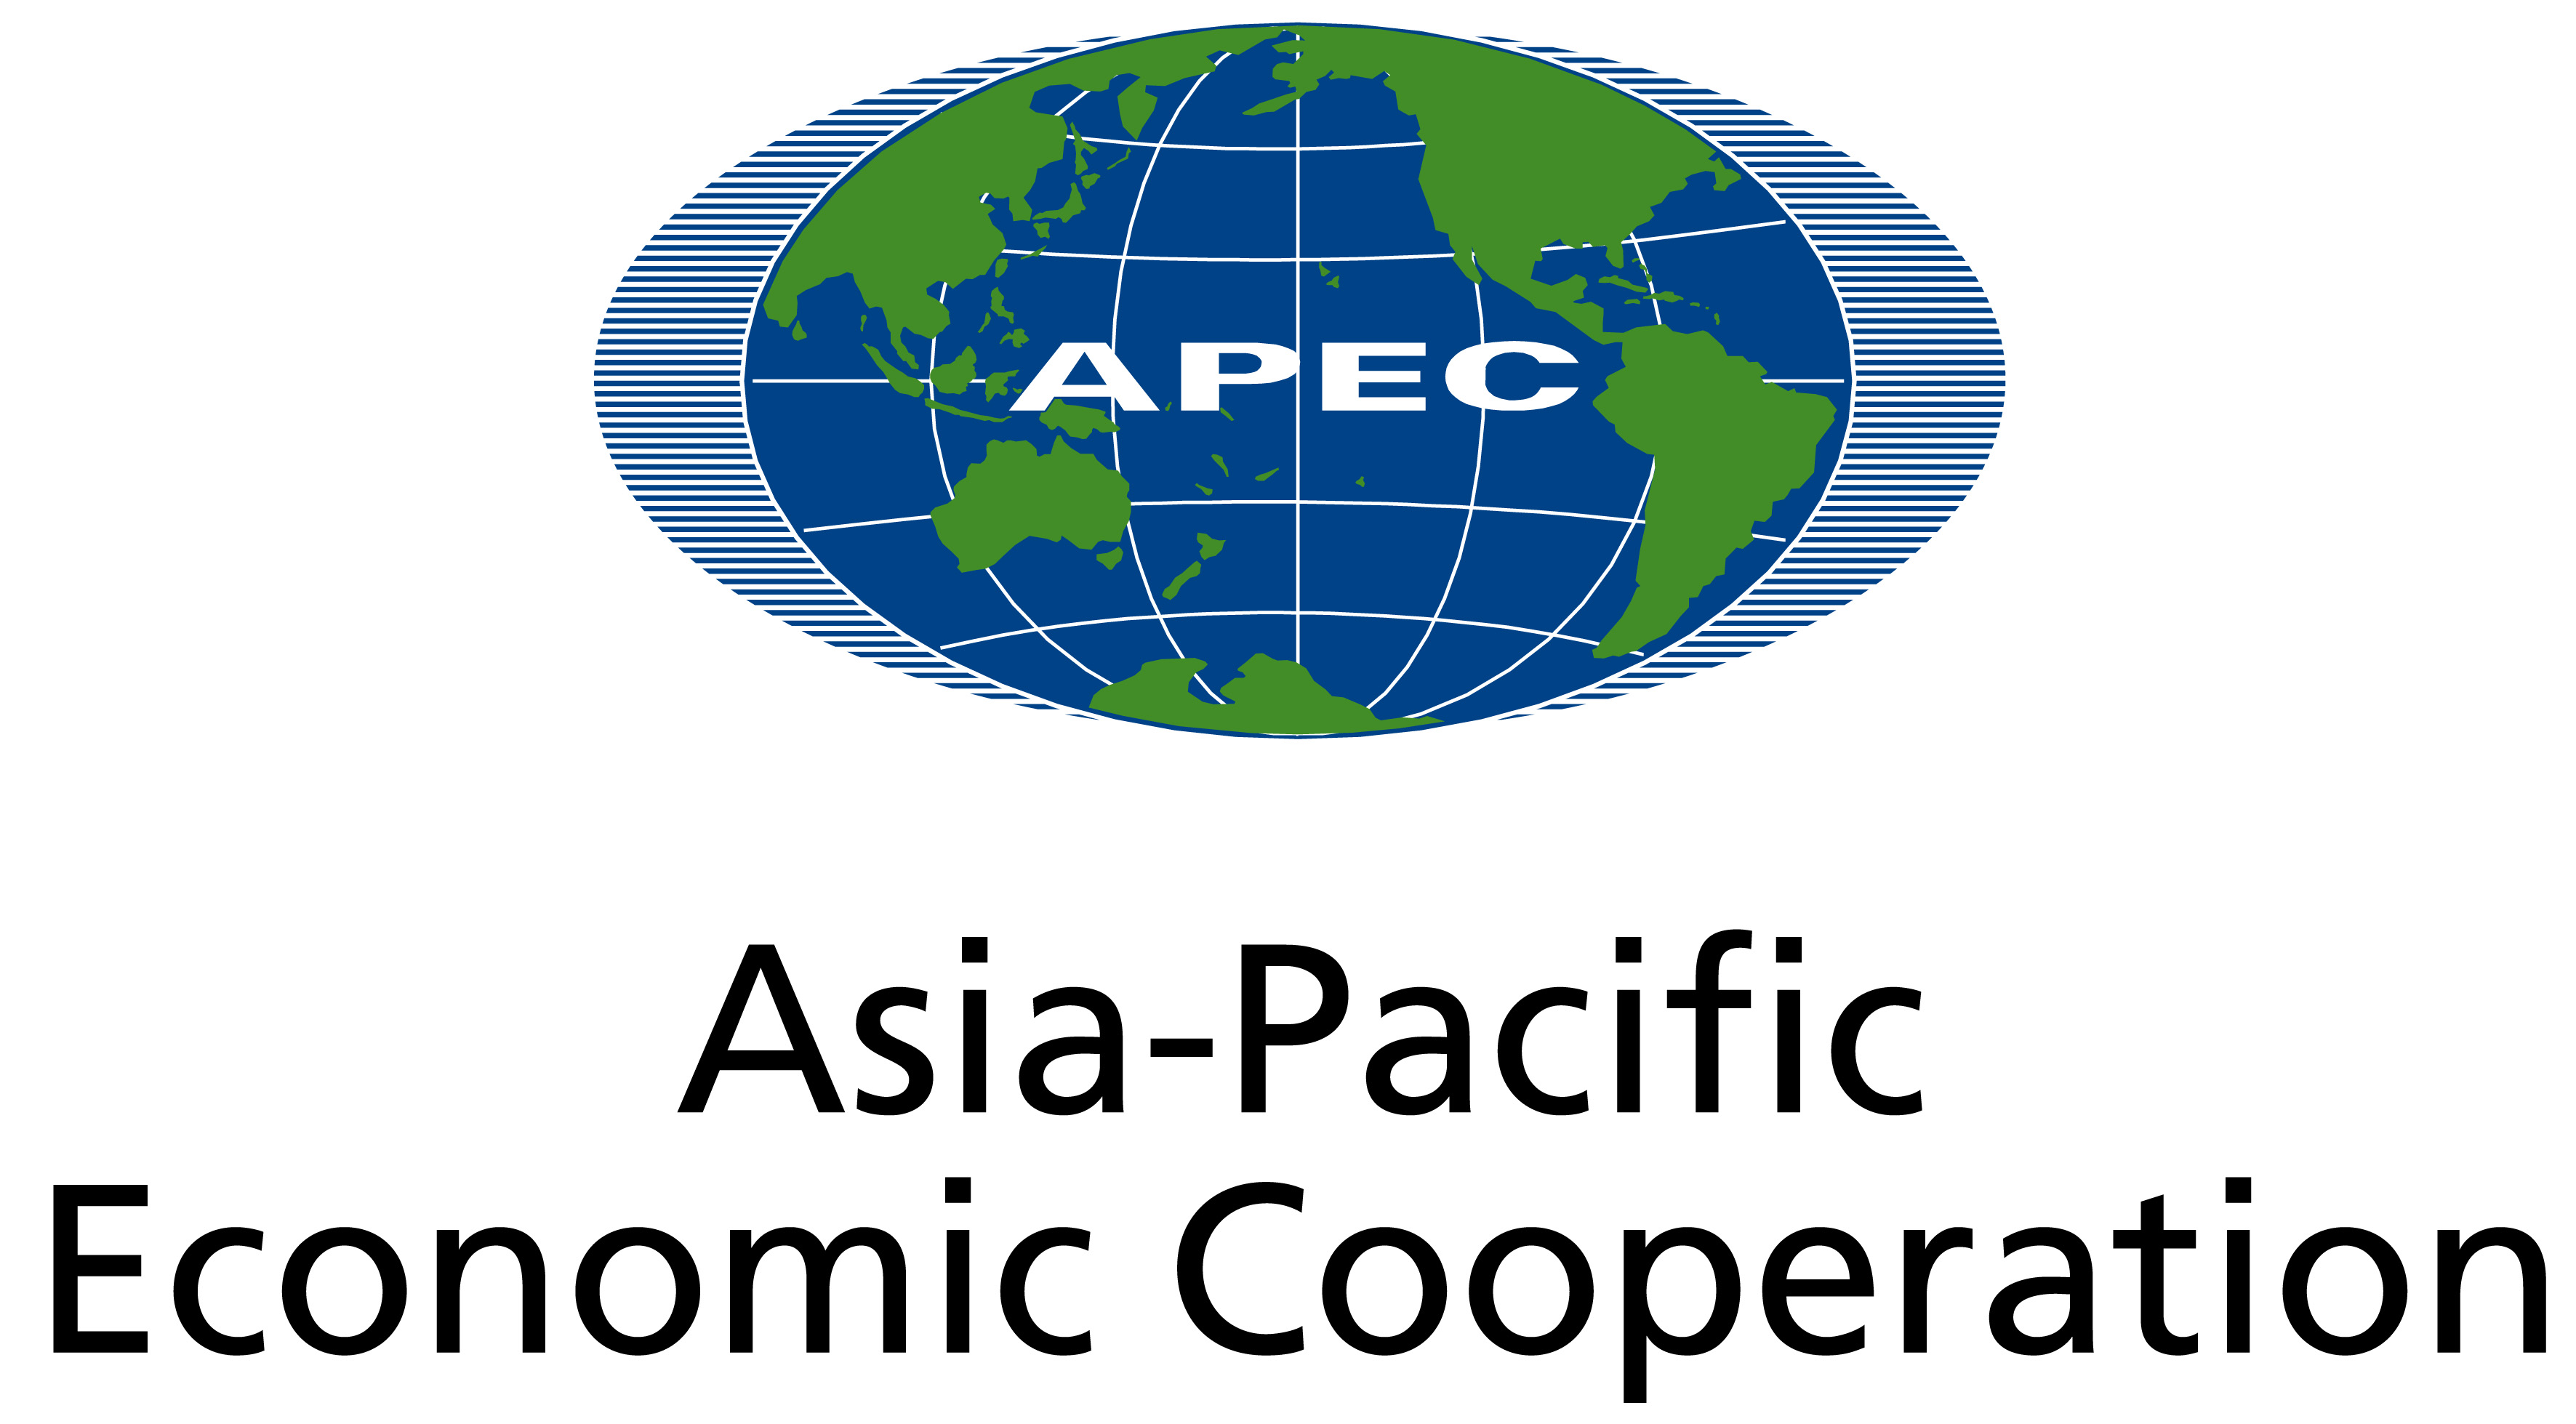 Thẻ APEC được chấp nhận tại các nước thành viên thuộc khối APEC